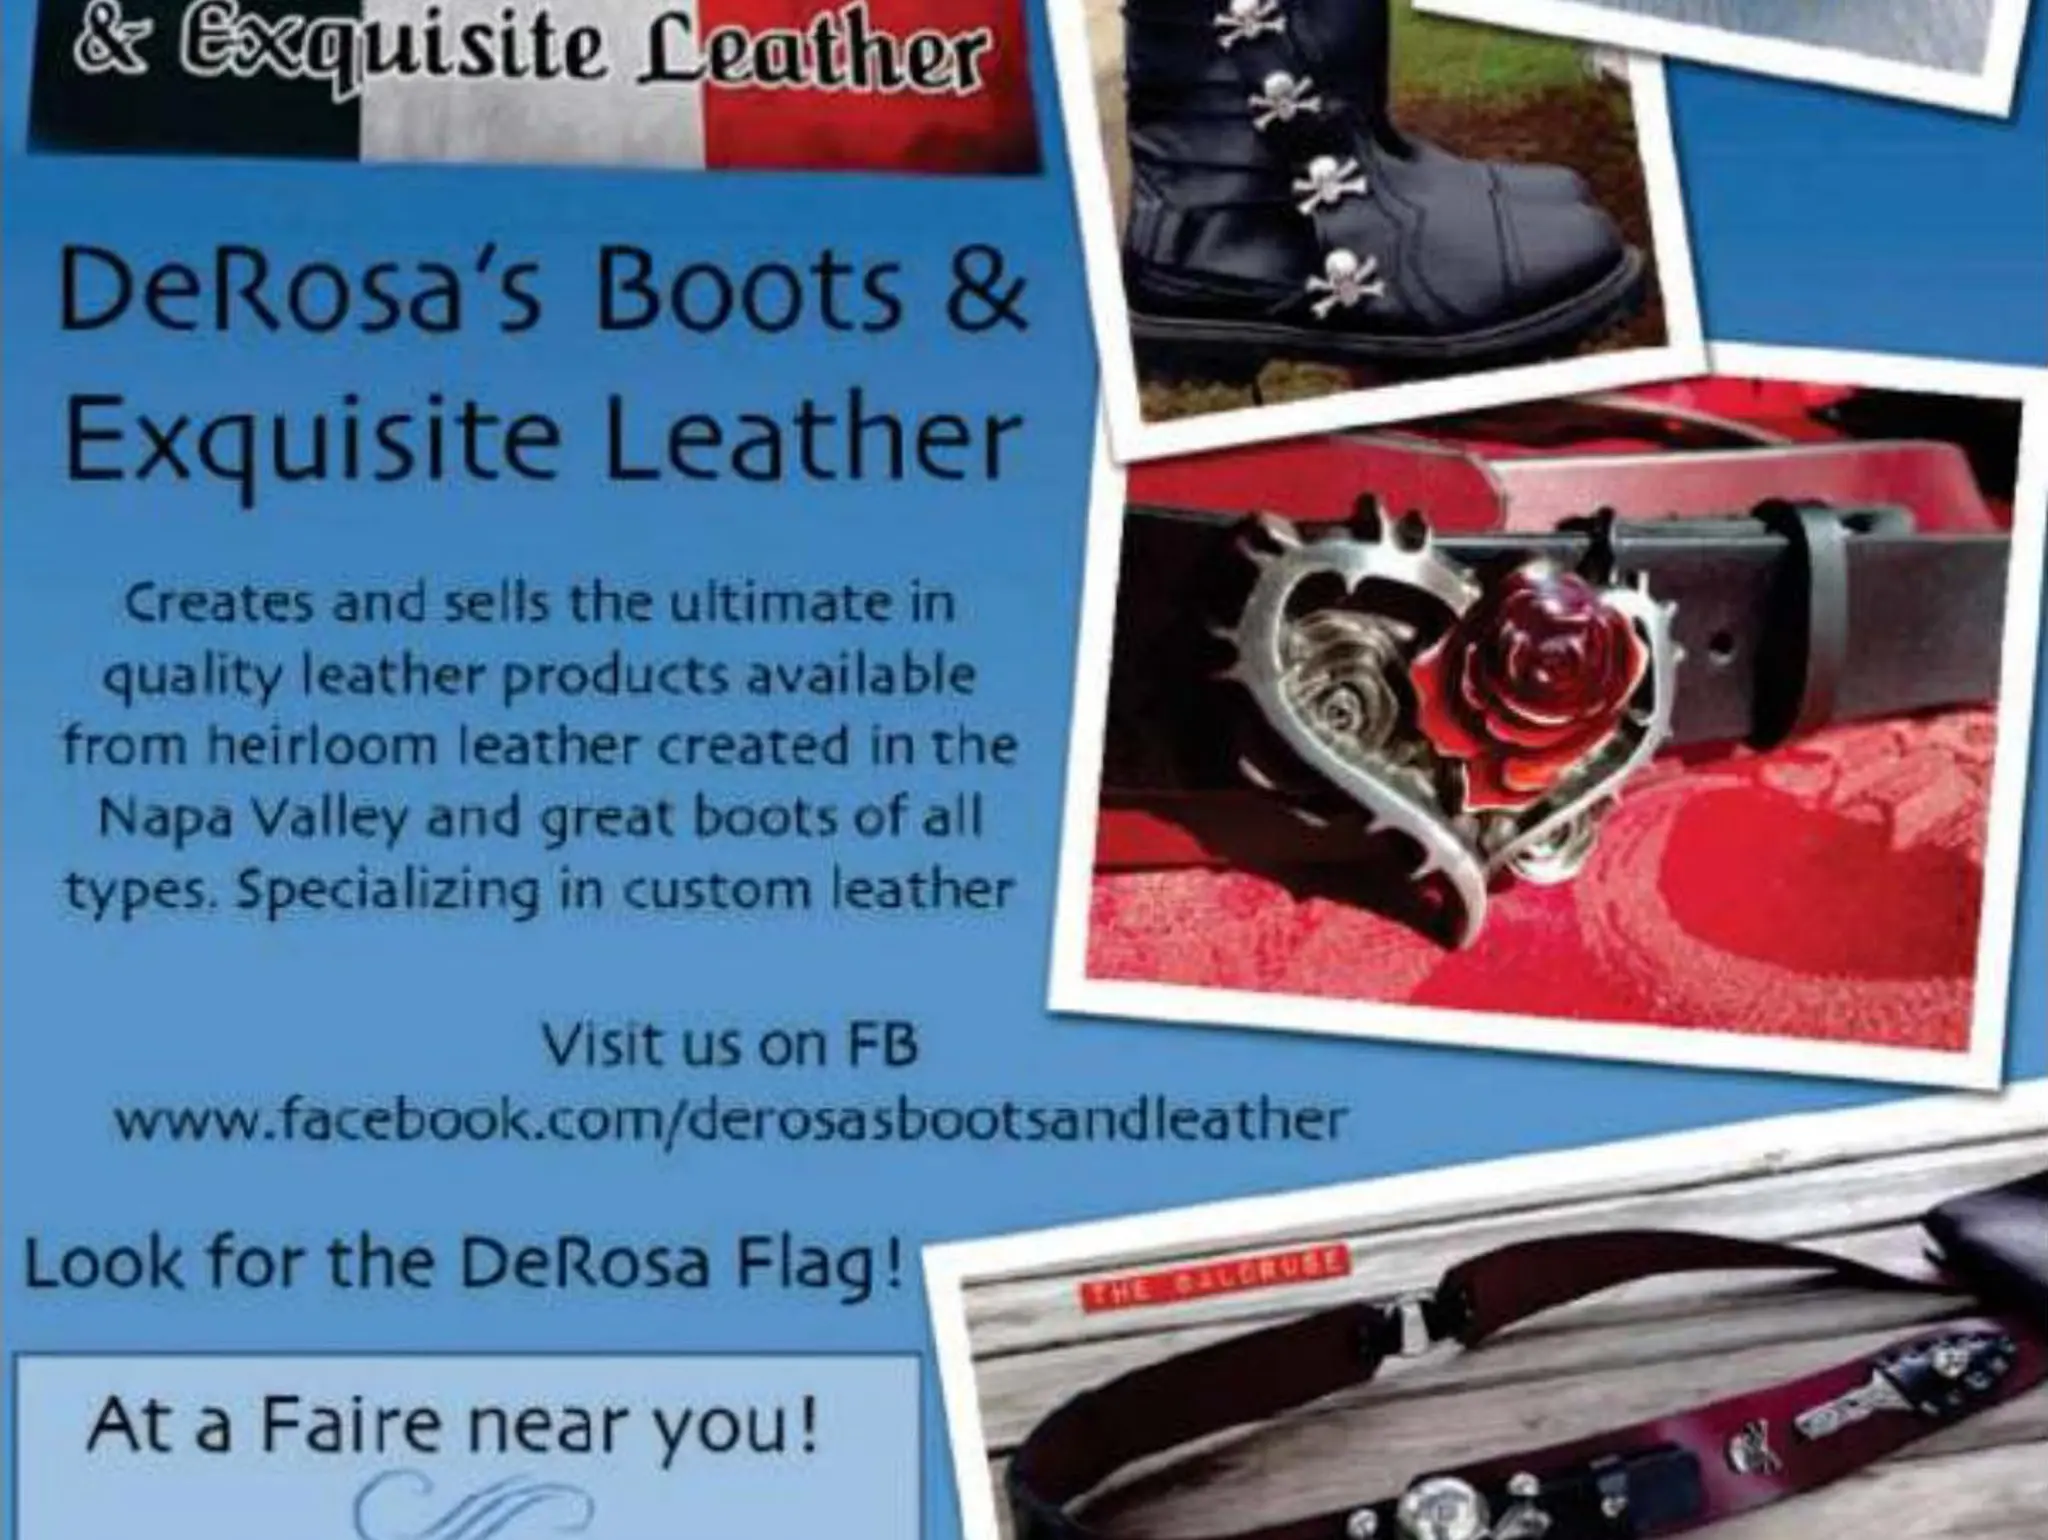 De Rosa's Boots & Exquisite Leather